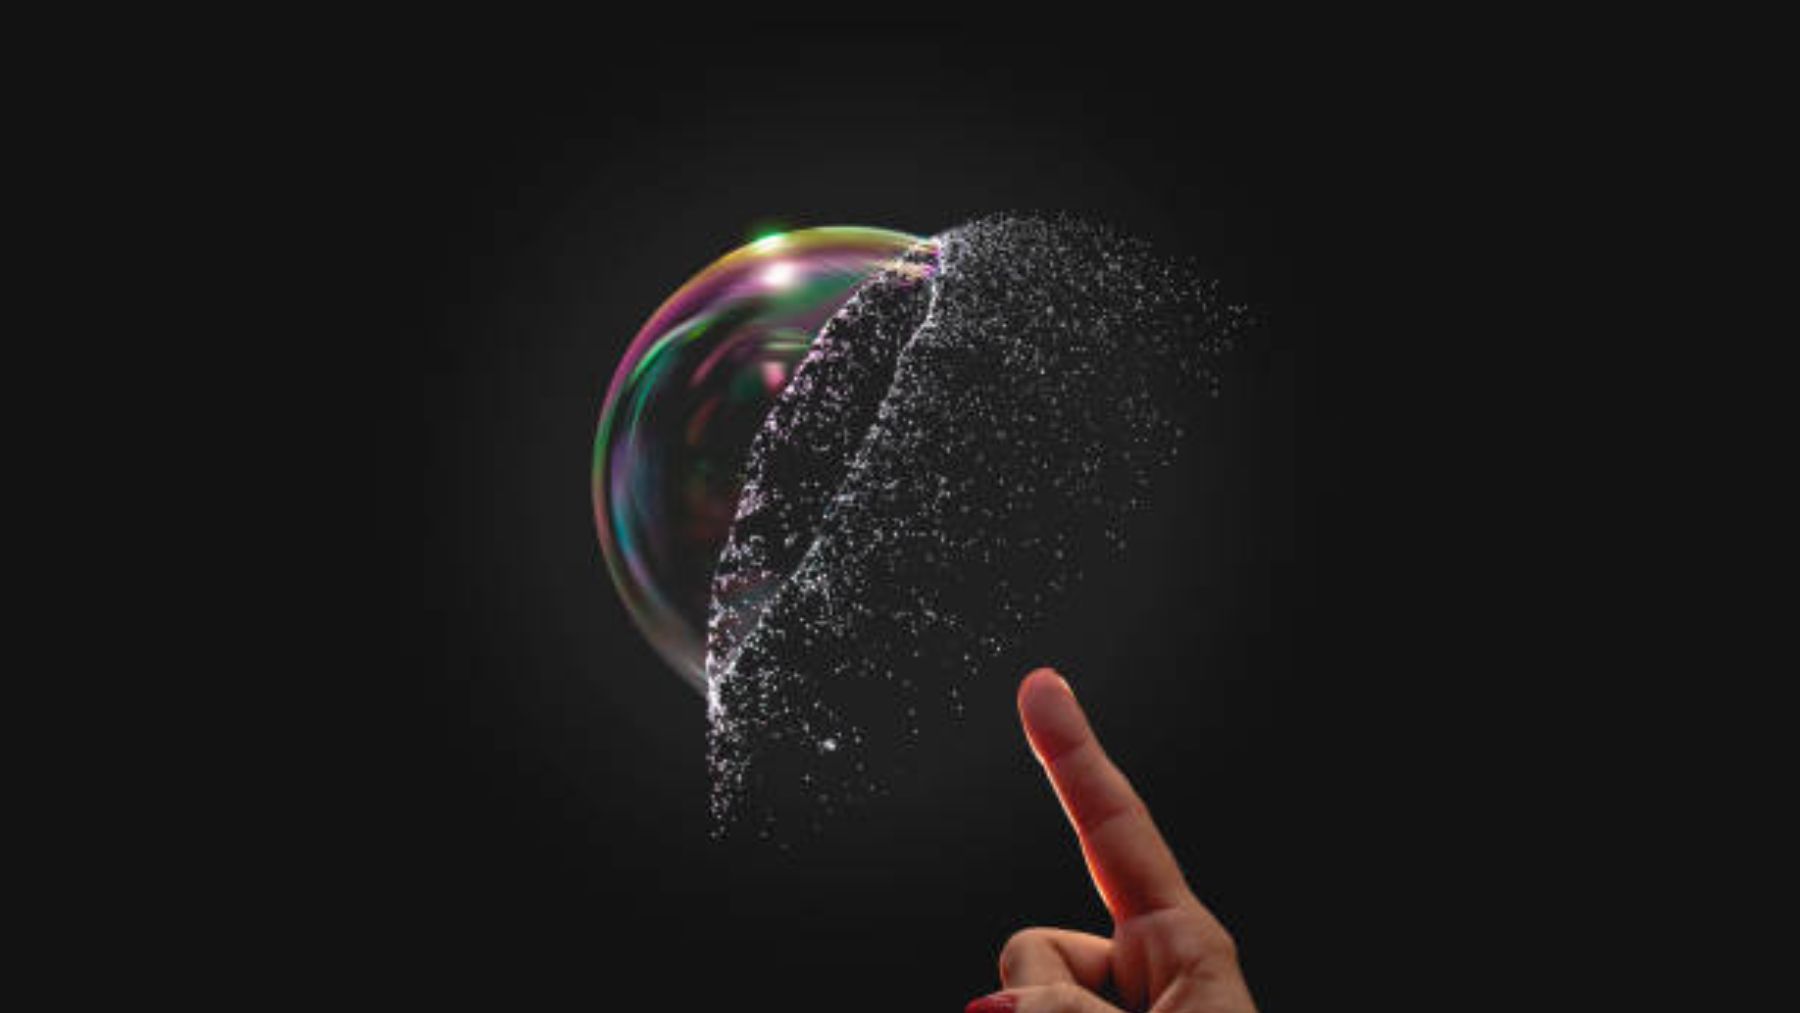 Descubre el motivo por el que la burbuja brilla al estallar